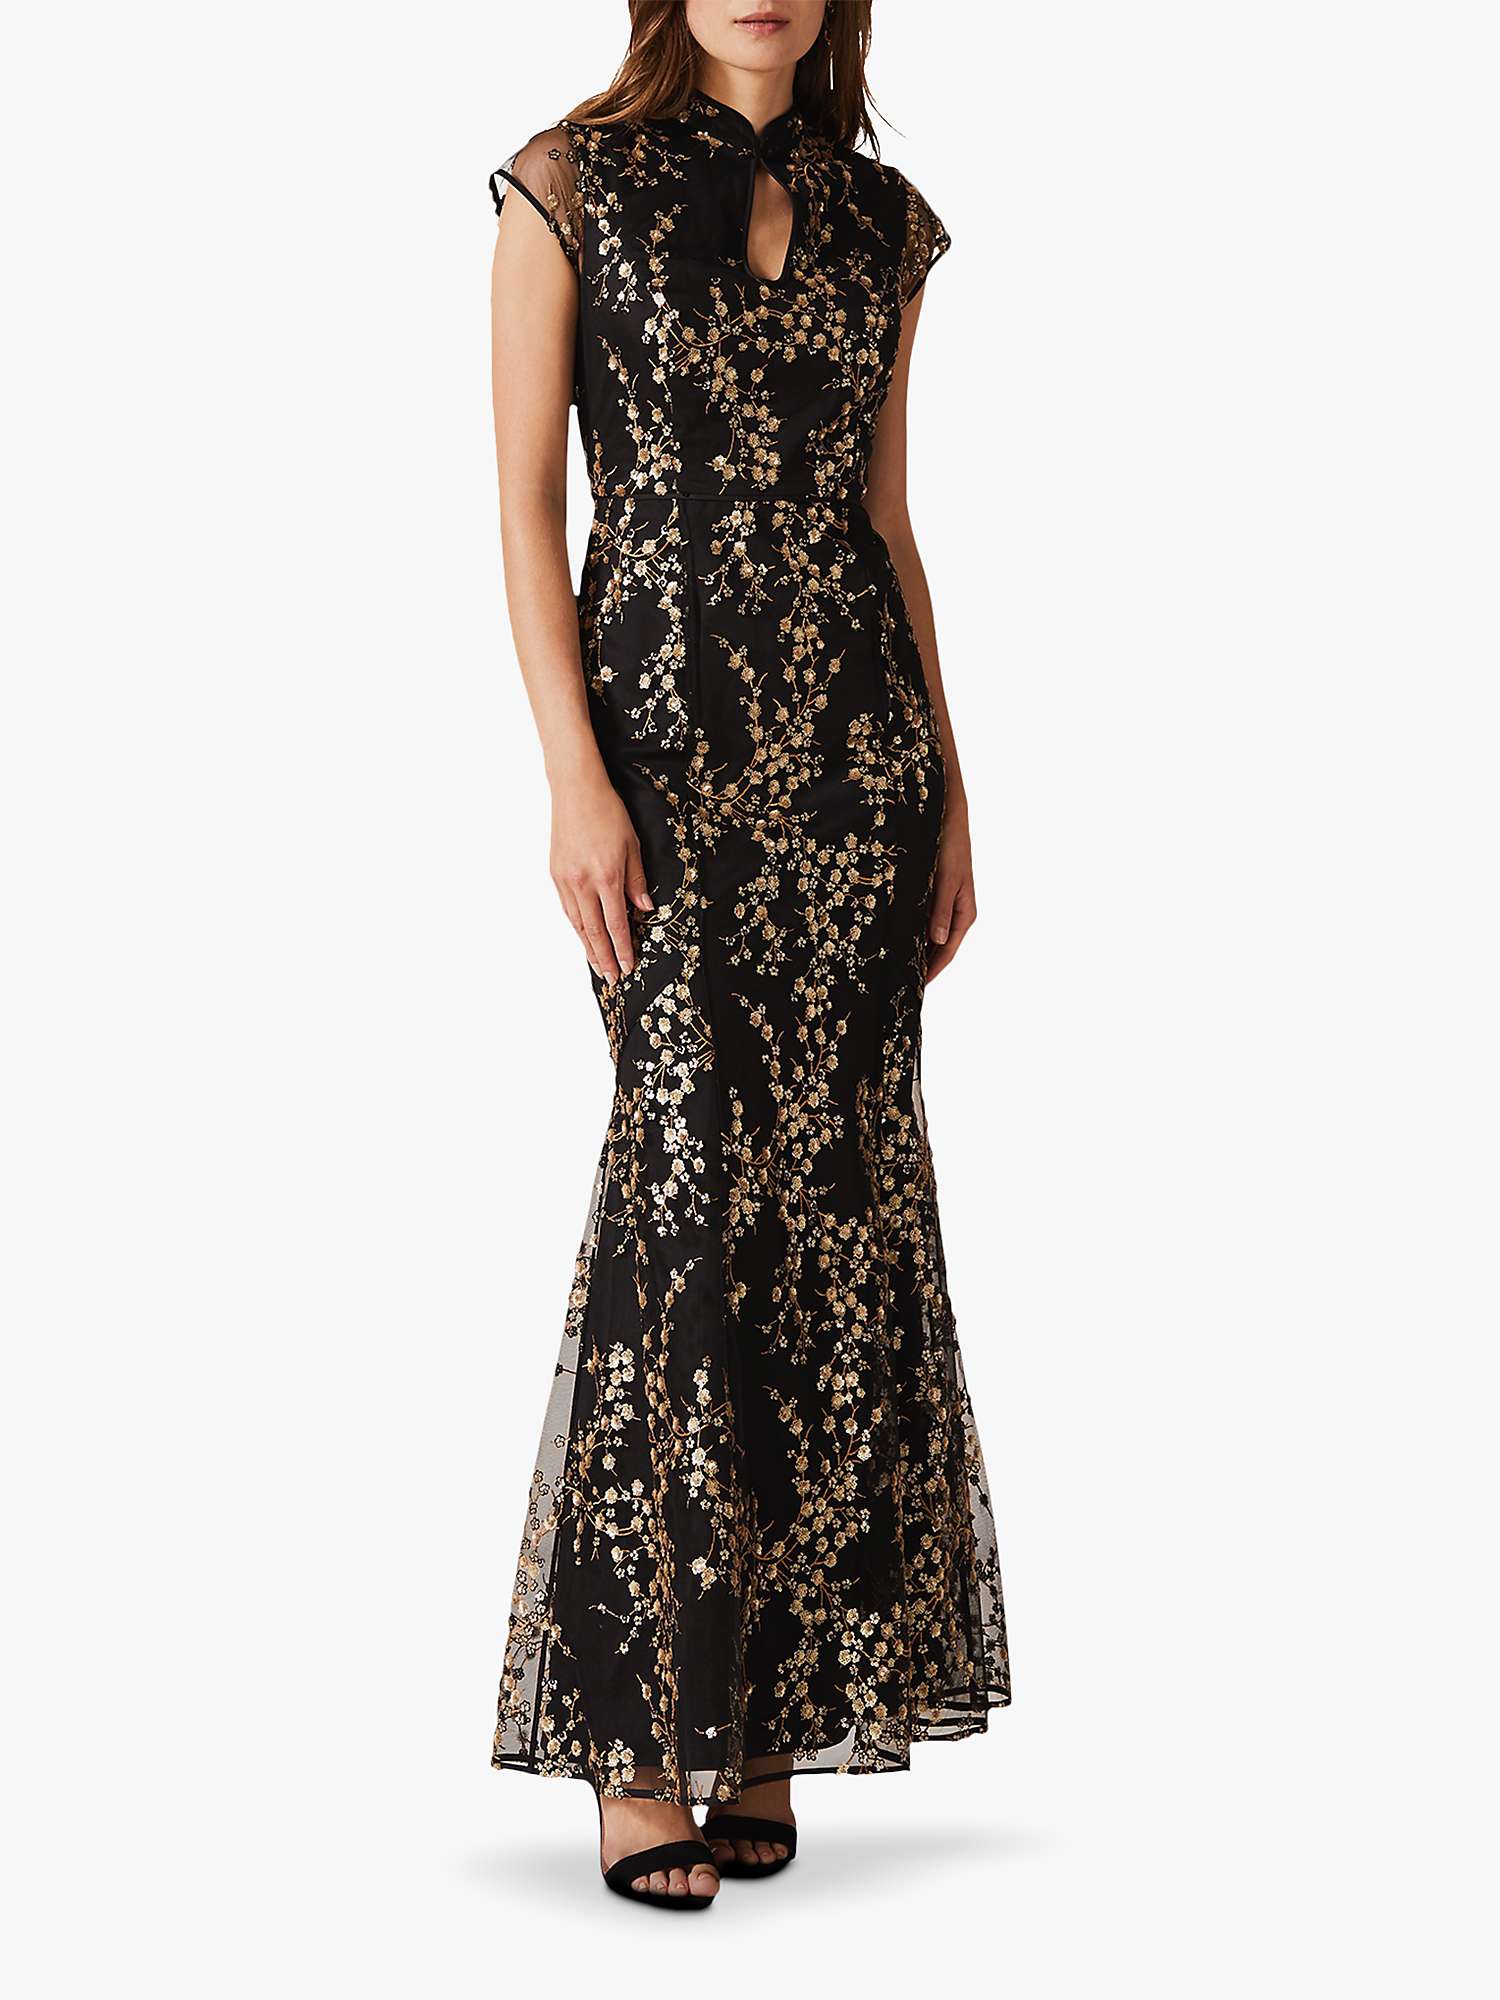 8 Sia Sequin Maxi Dress, Black/Gold ...